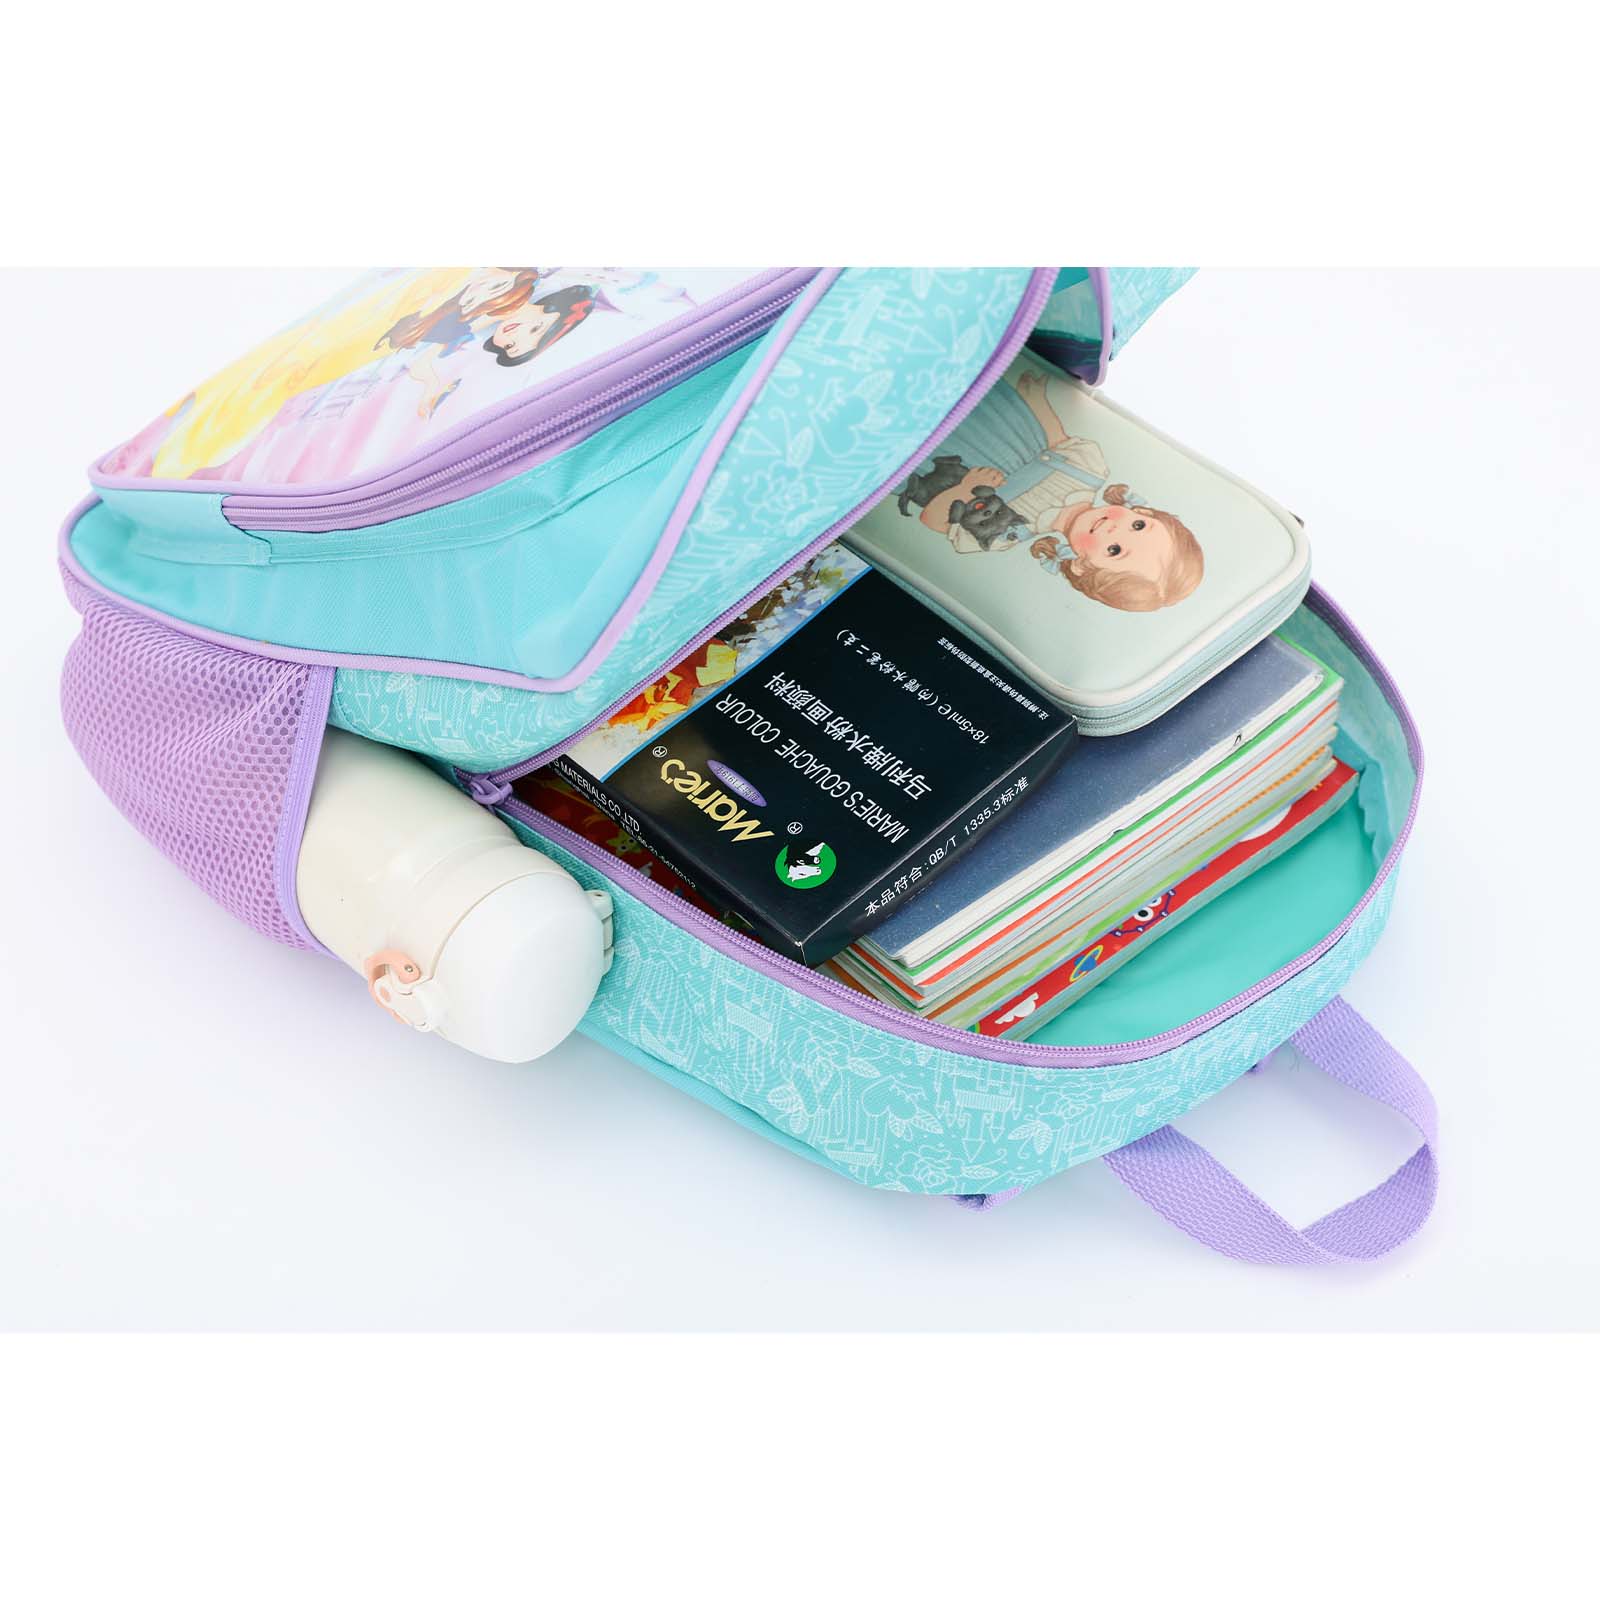    disney-princess-16inch-backpack-opening.jpg